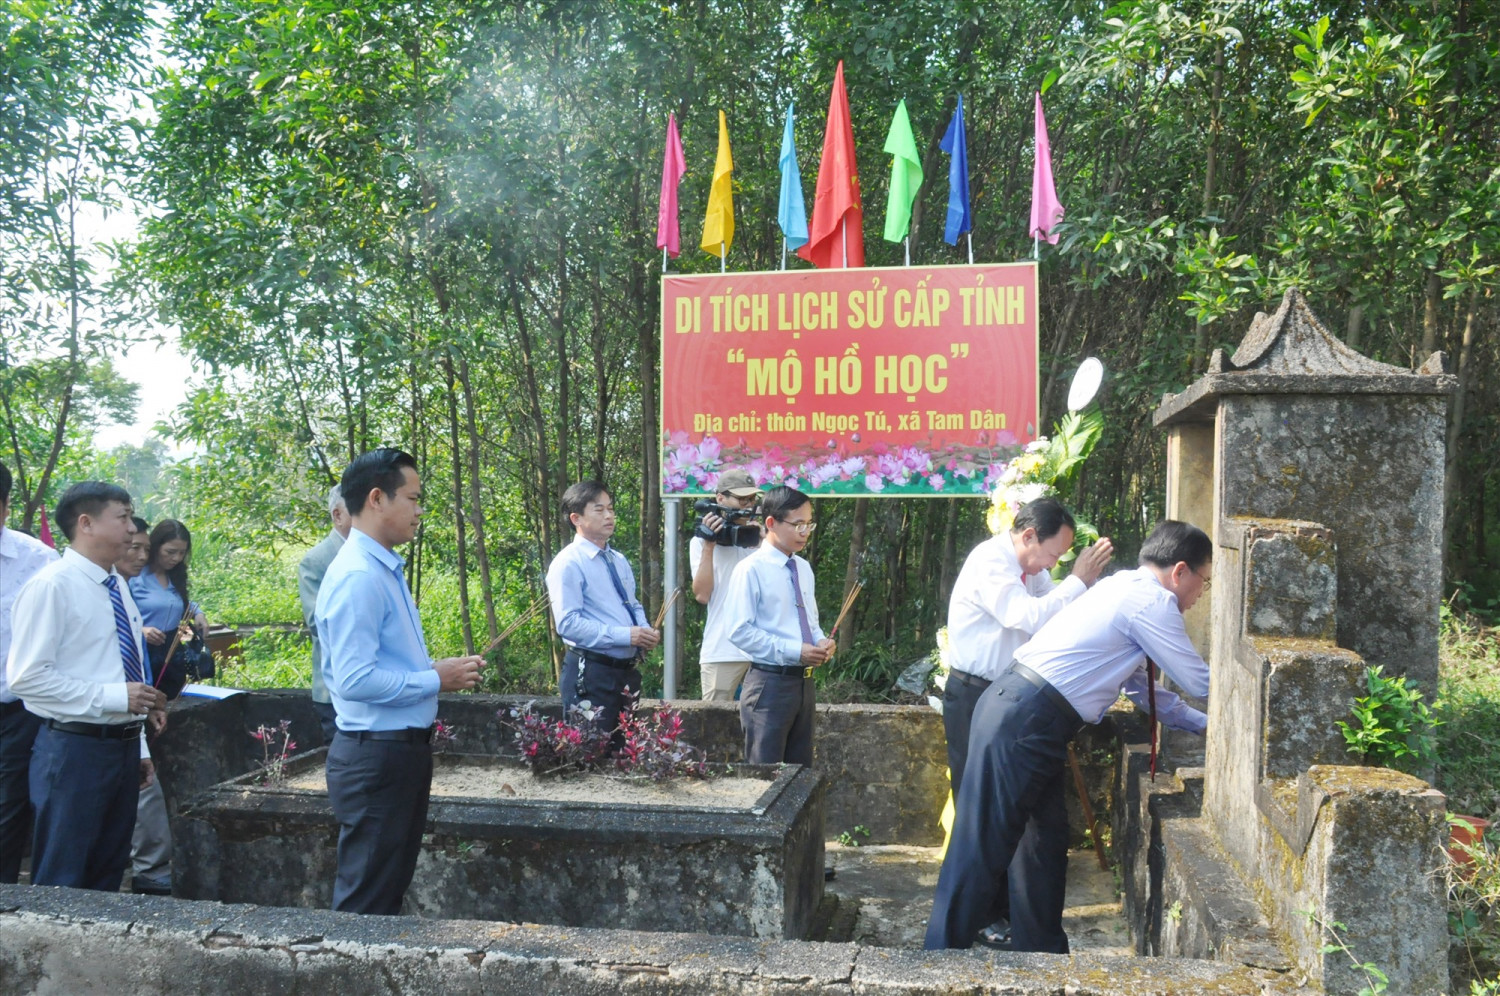 Mộ Hồ Học (xã Tam Dân) được xếp hạng di tích lịch sử cấp tỉnh